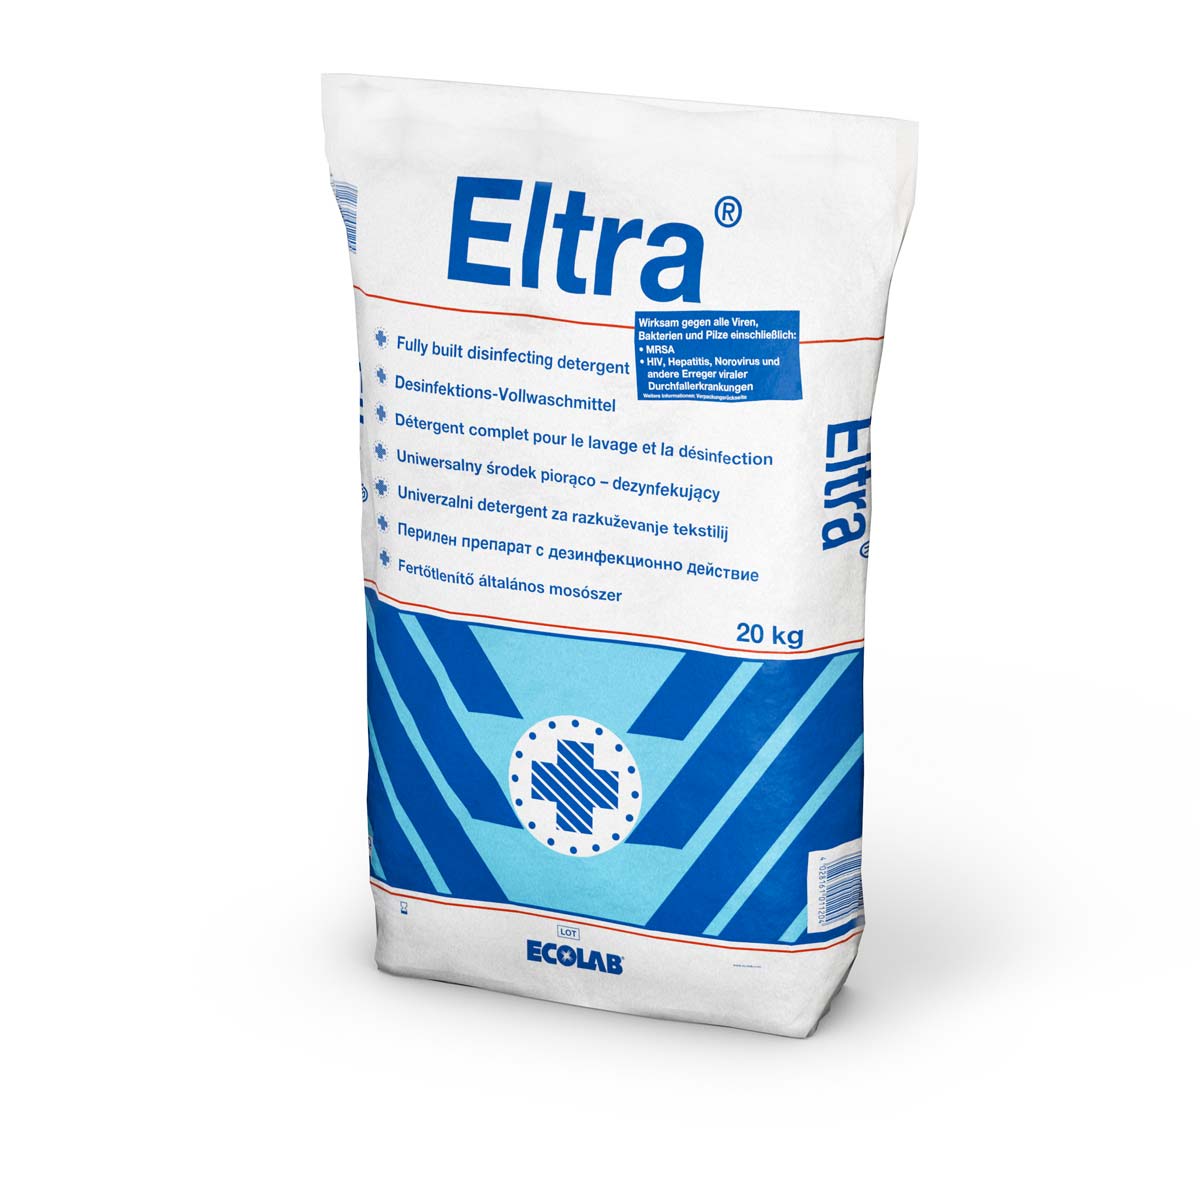 Eltra® | 20 kg  | 60°C Desinfektions-Vollwaschmittel +++ BIOZIDPRODUKTE VORSICHTIG VERWENDEN +++